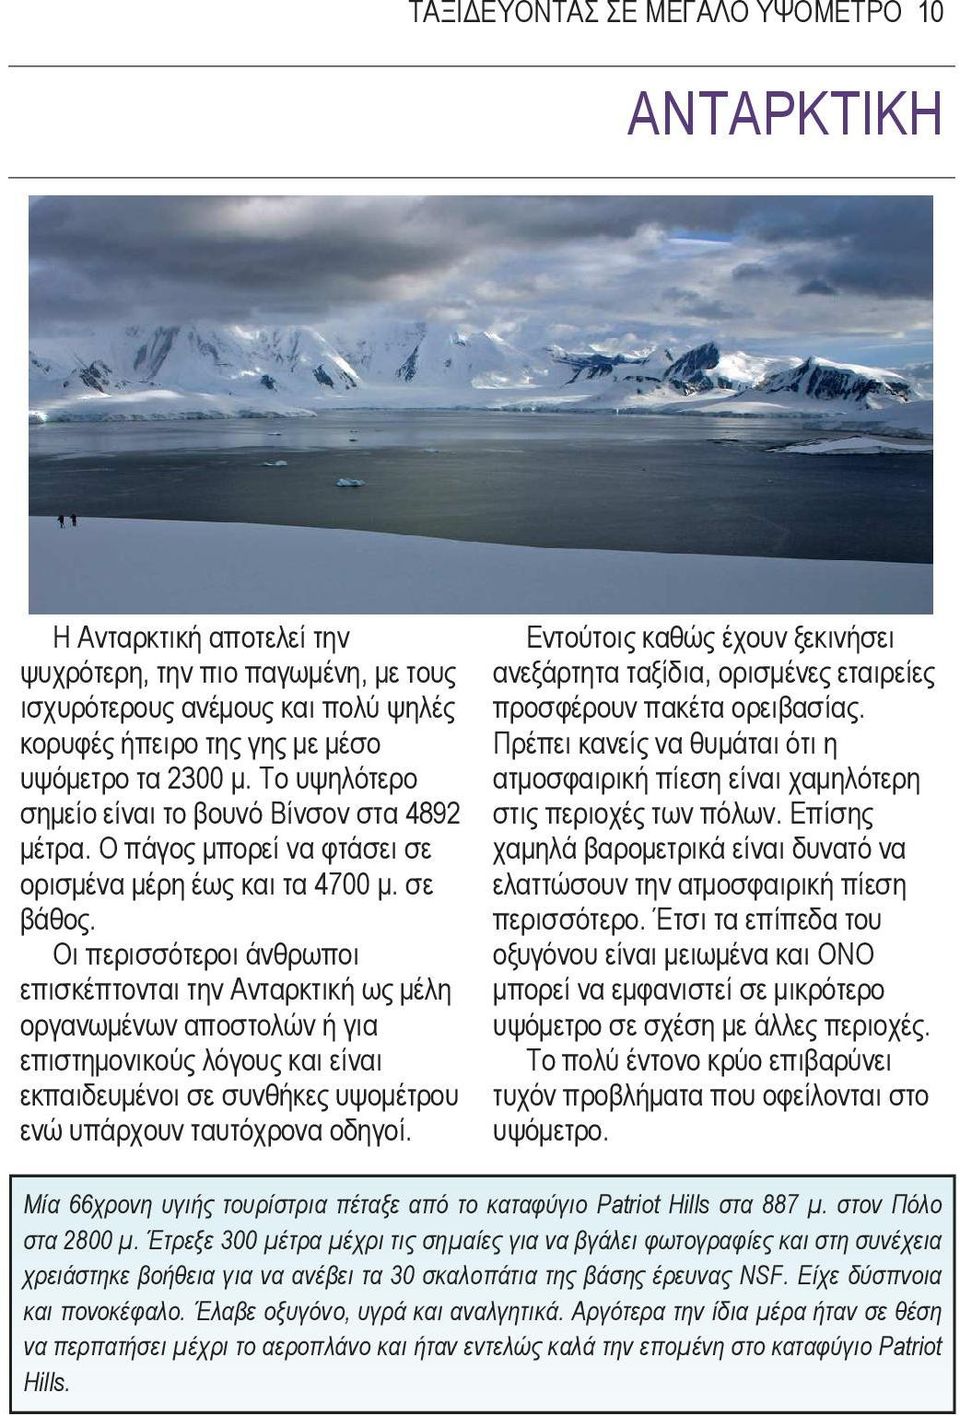 Οι περισσότεροι άνθρωποι επισκέπτονται την Ανταρκτική ως µέλη οργανωµένων αποστολών ή για επιστηµονικούς λόγους και είναι εκπαιδευµένοι σε συνθήκες υψοµέτρου ενώ υπάρχουν ταυτόχρονα οδηγοί.